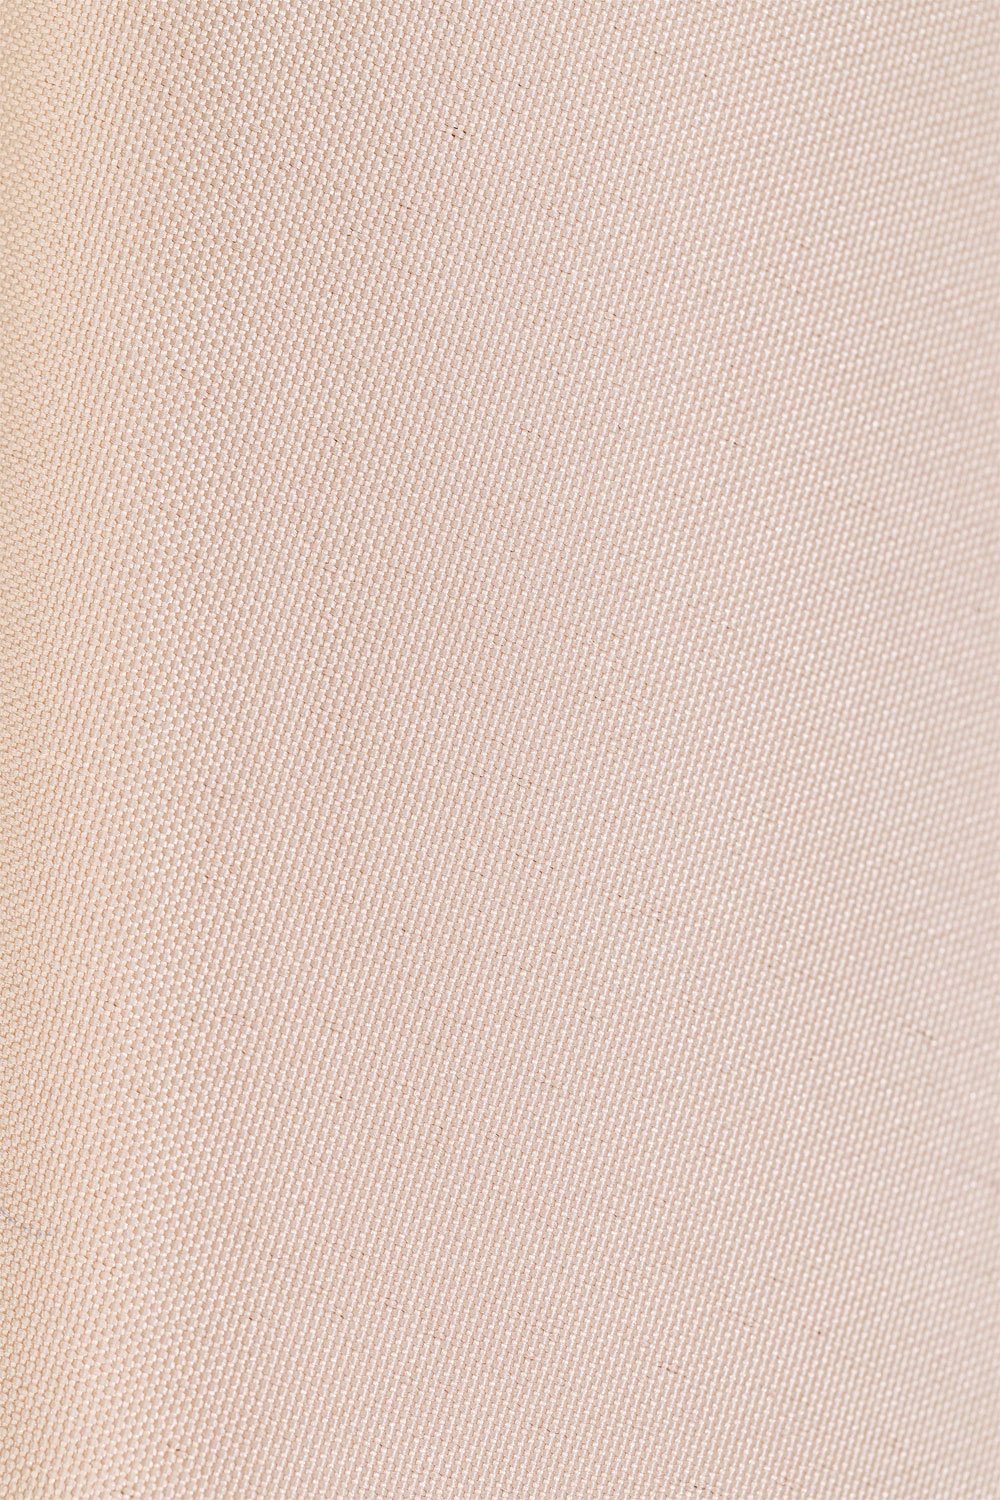 Sombrilla en Tela y Acero (Ø295 cm) Gerran Maquillaje Claro -  SKLUM